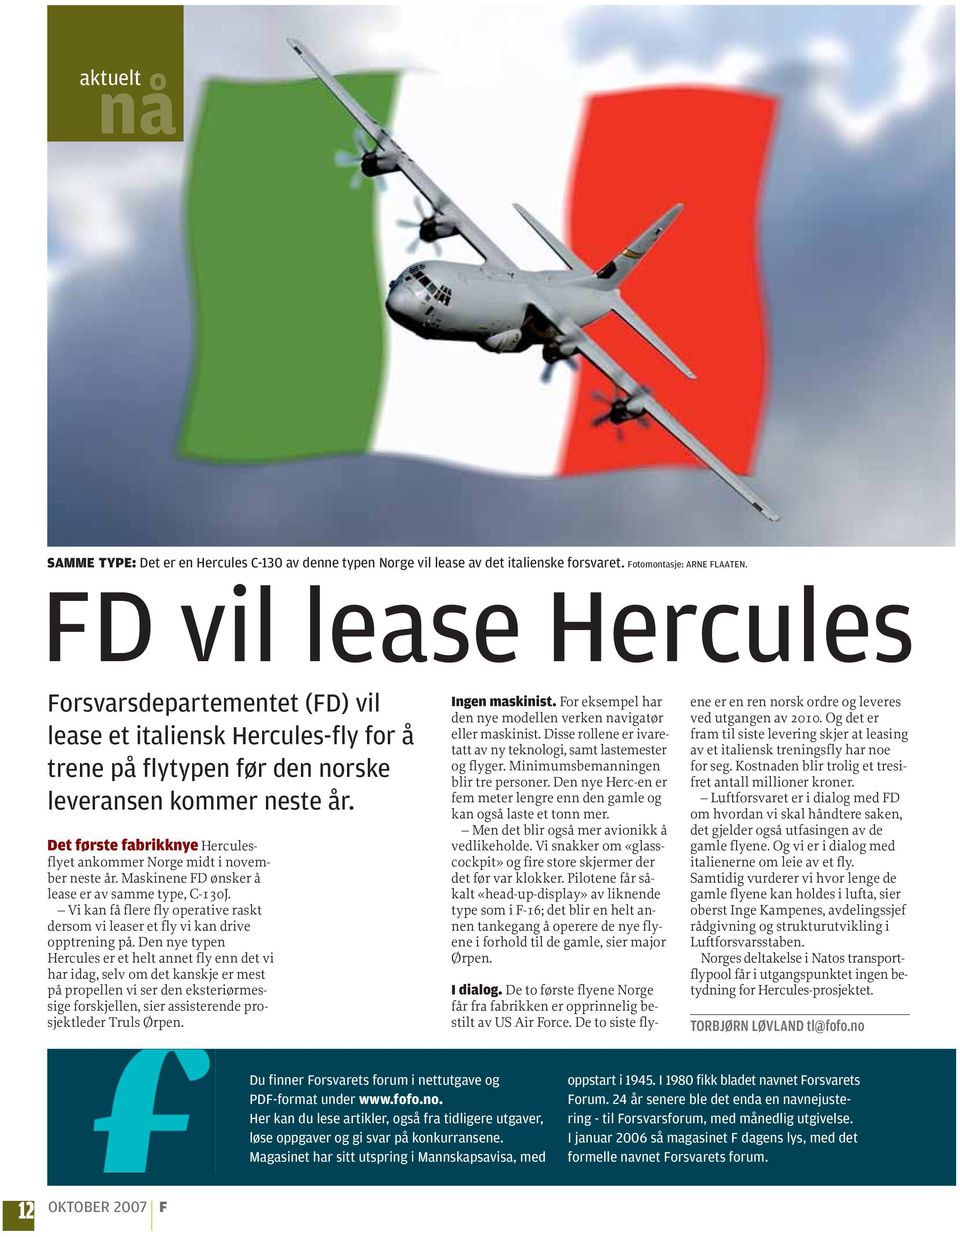 Det første fabrikknye Herculesflyet ankommer Norge midt i november neste år. Maskinene FD ønsker å lease er av samme type, C-130J.